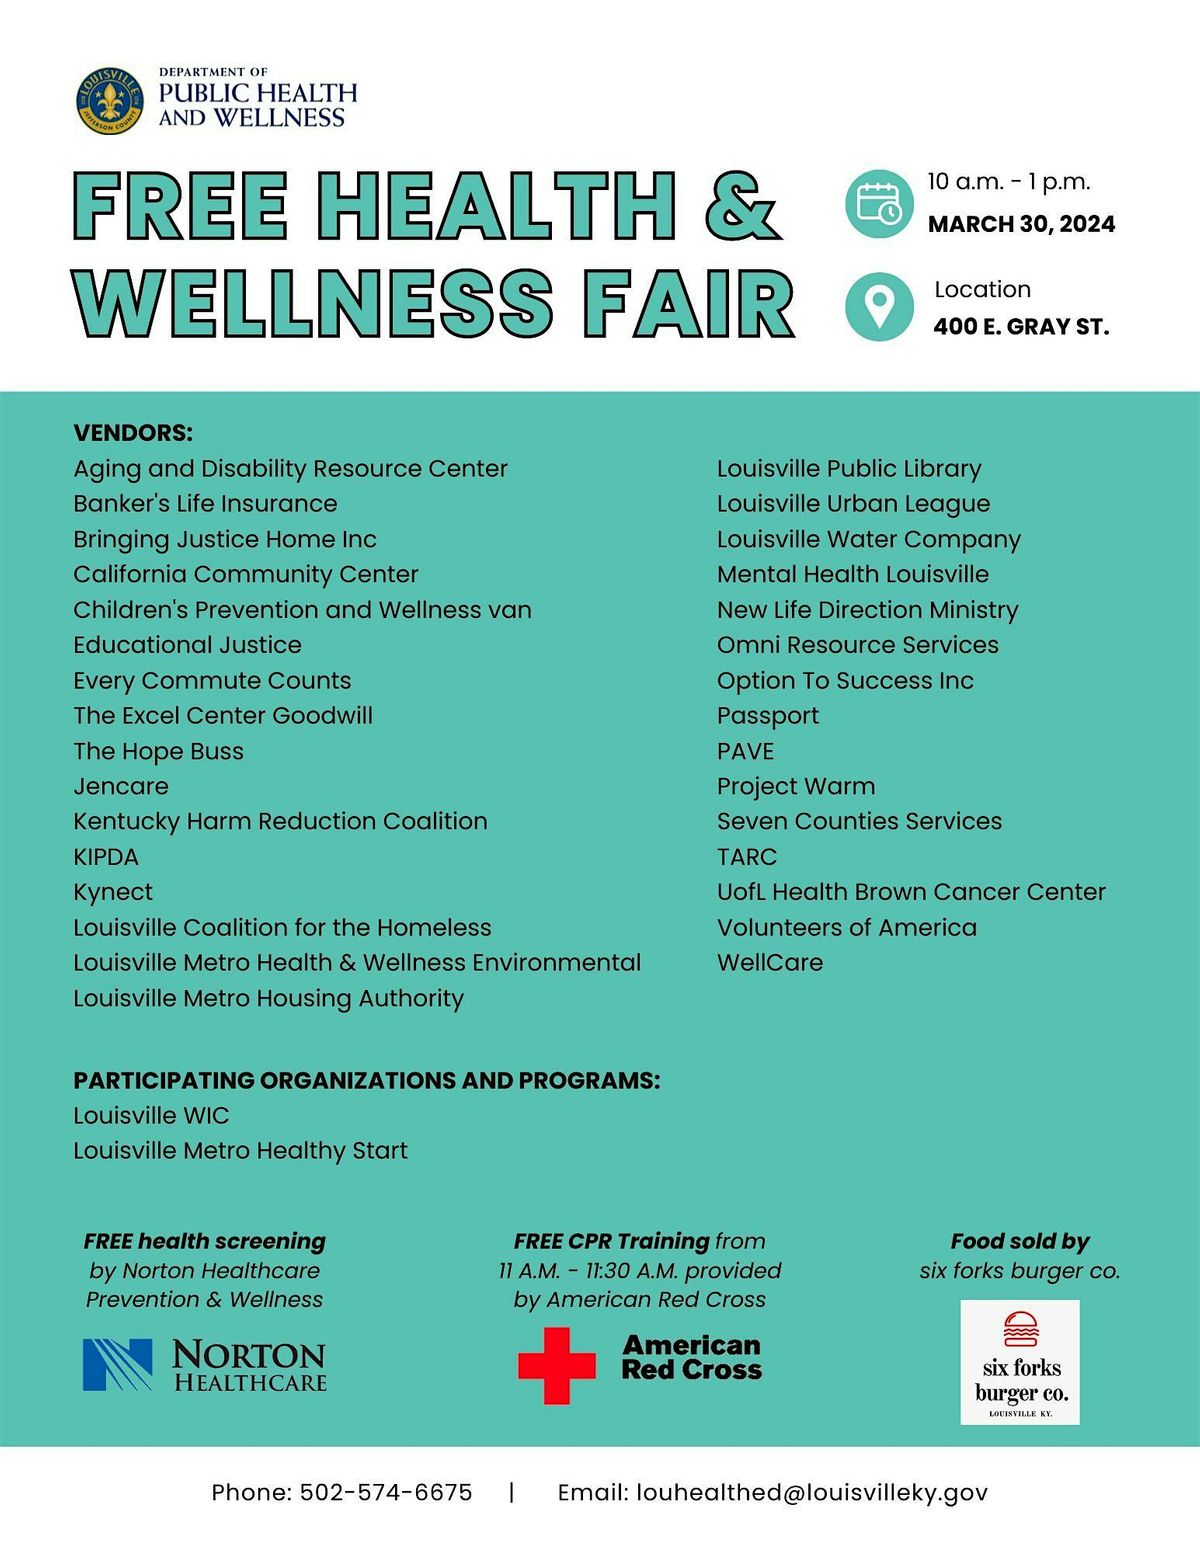 Health & Wellness Fair